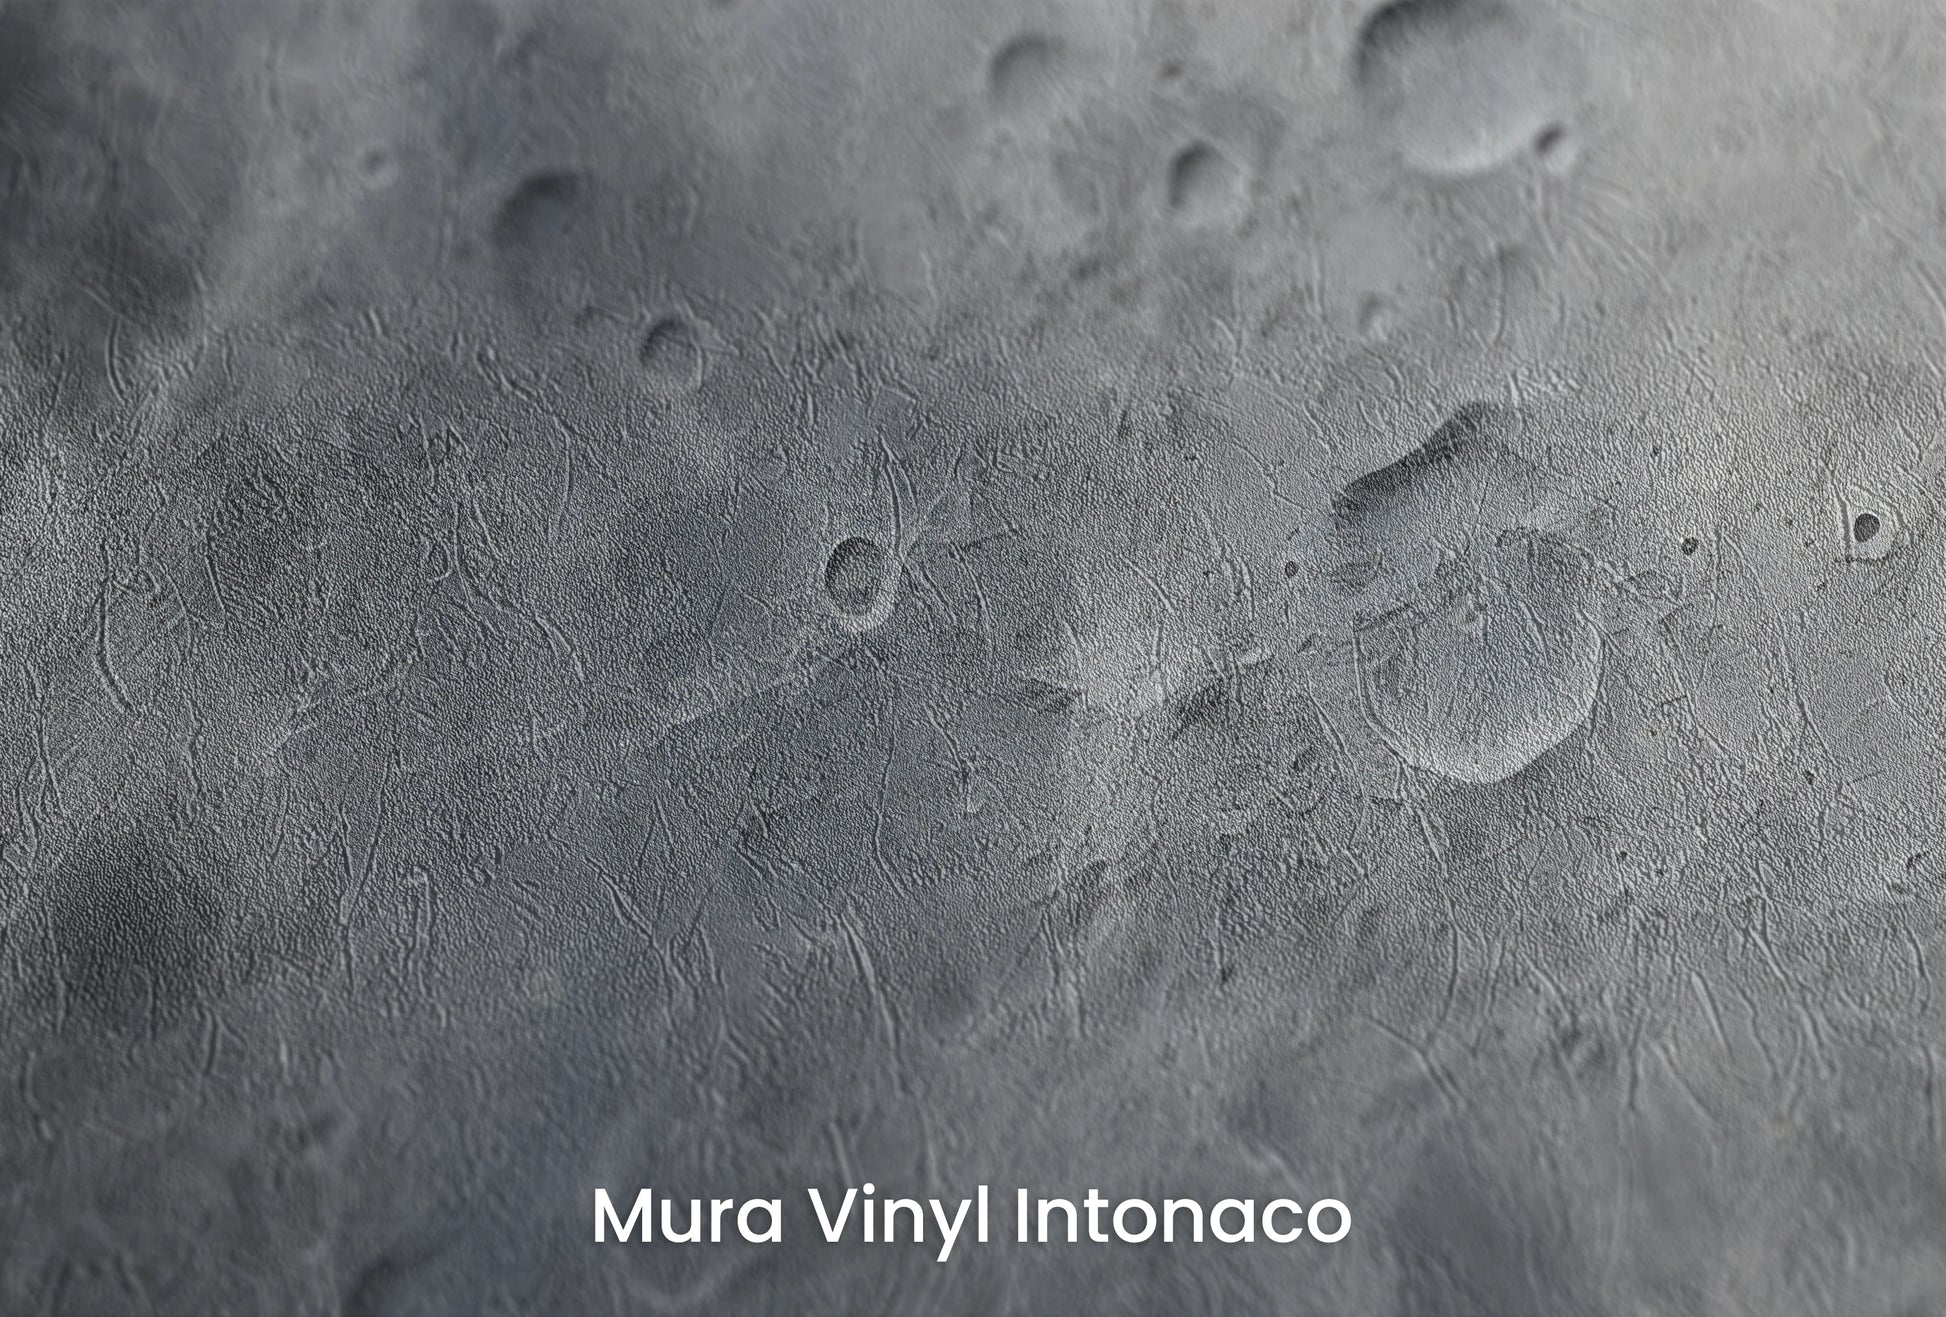 Zbliżenie na artystyczną fototapetę o nazwie Moon's Monochrome #2 na podłożu Mura Vinyl Intonaco - struktura tartego tynku.